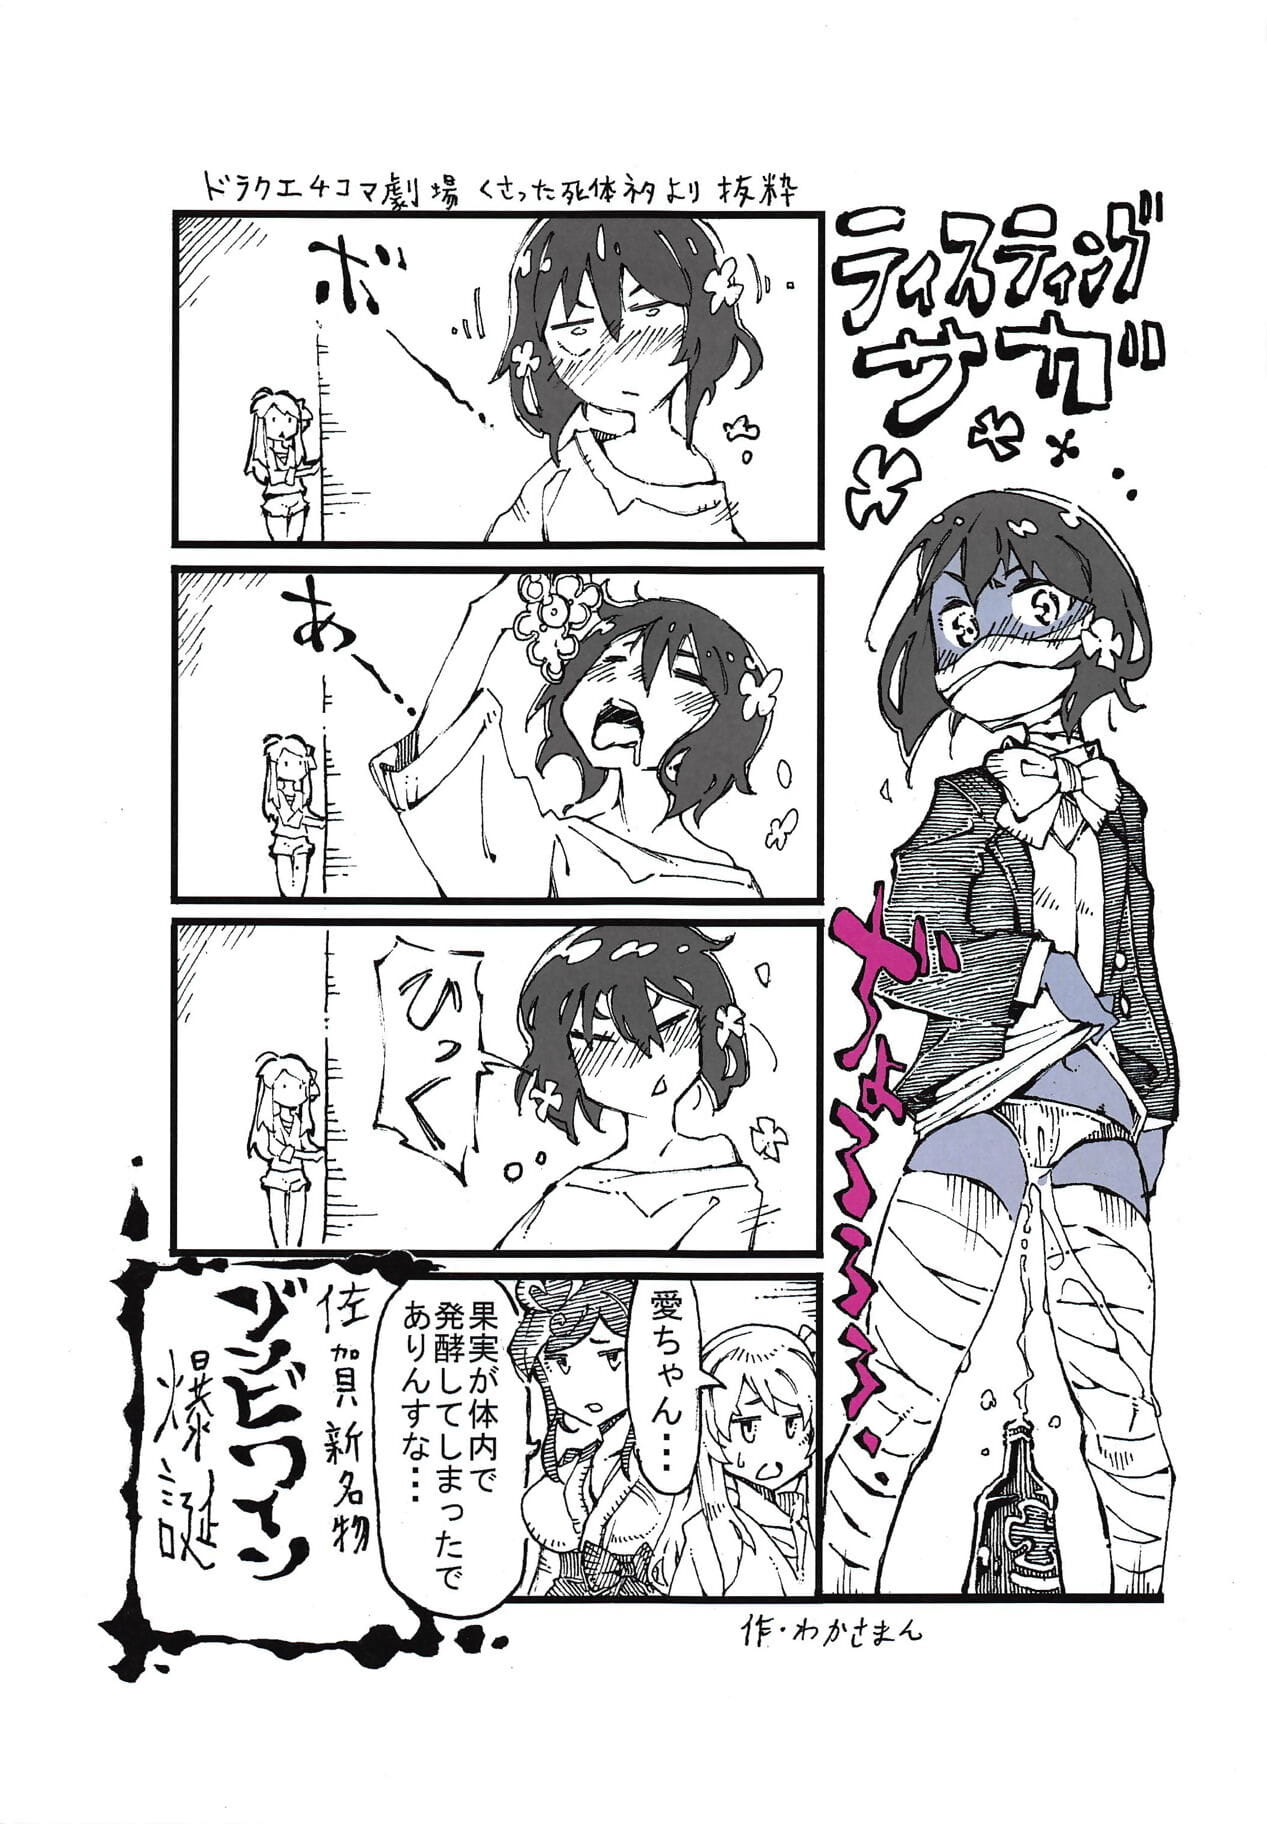 Junko chan nenhum Himitsu page 1